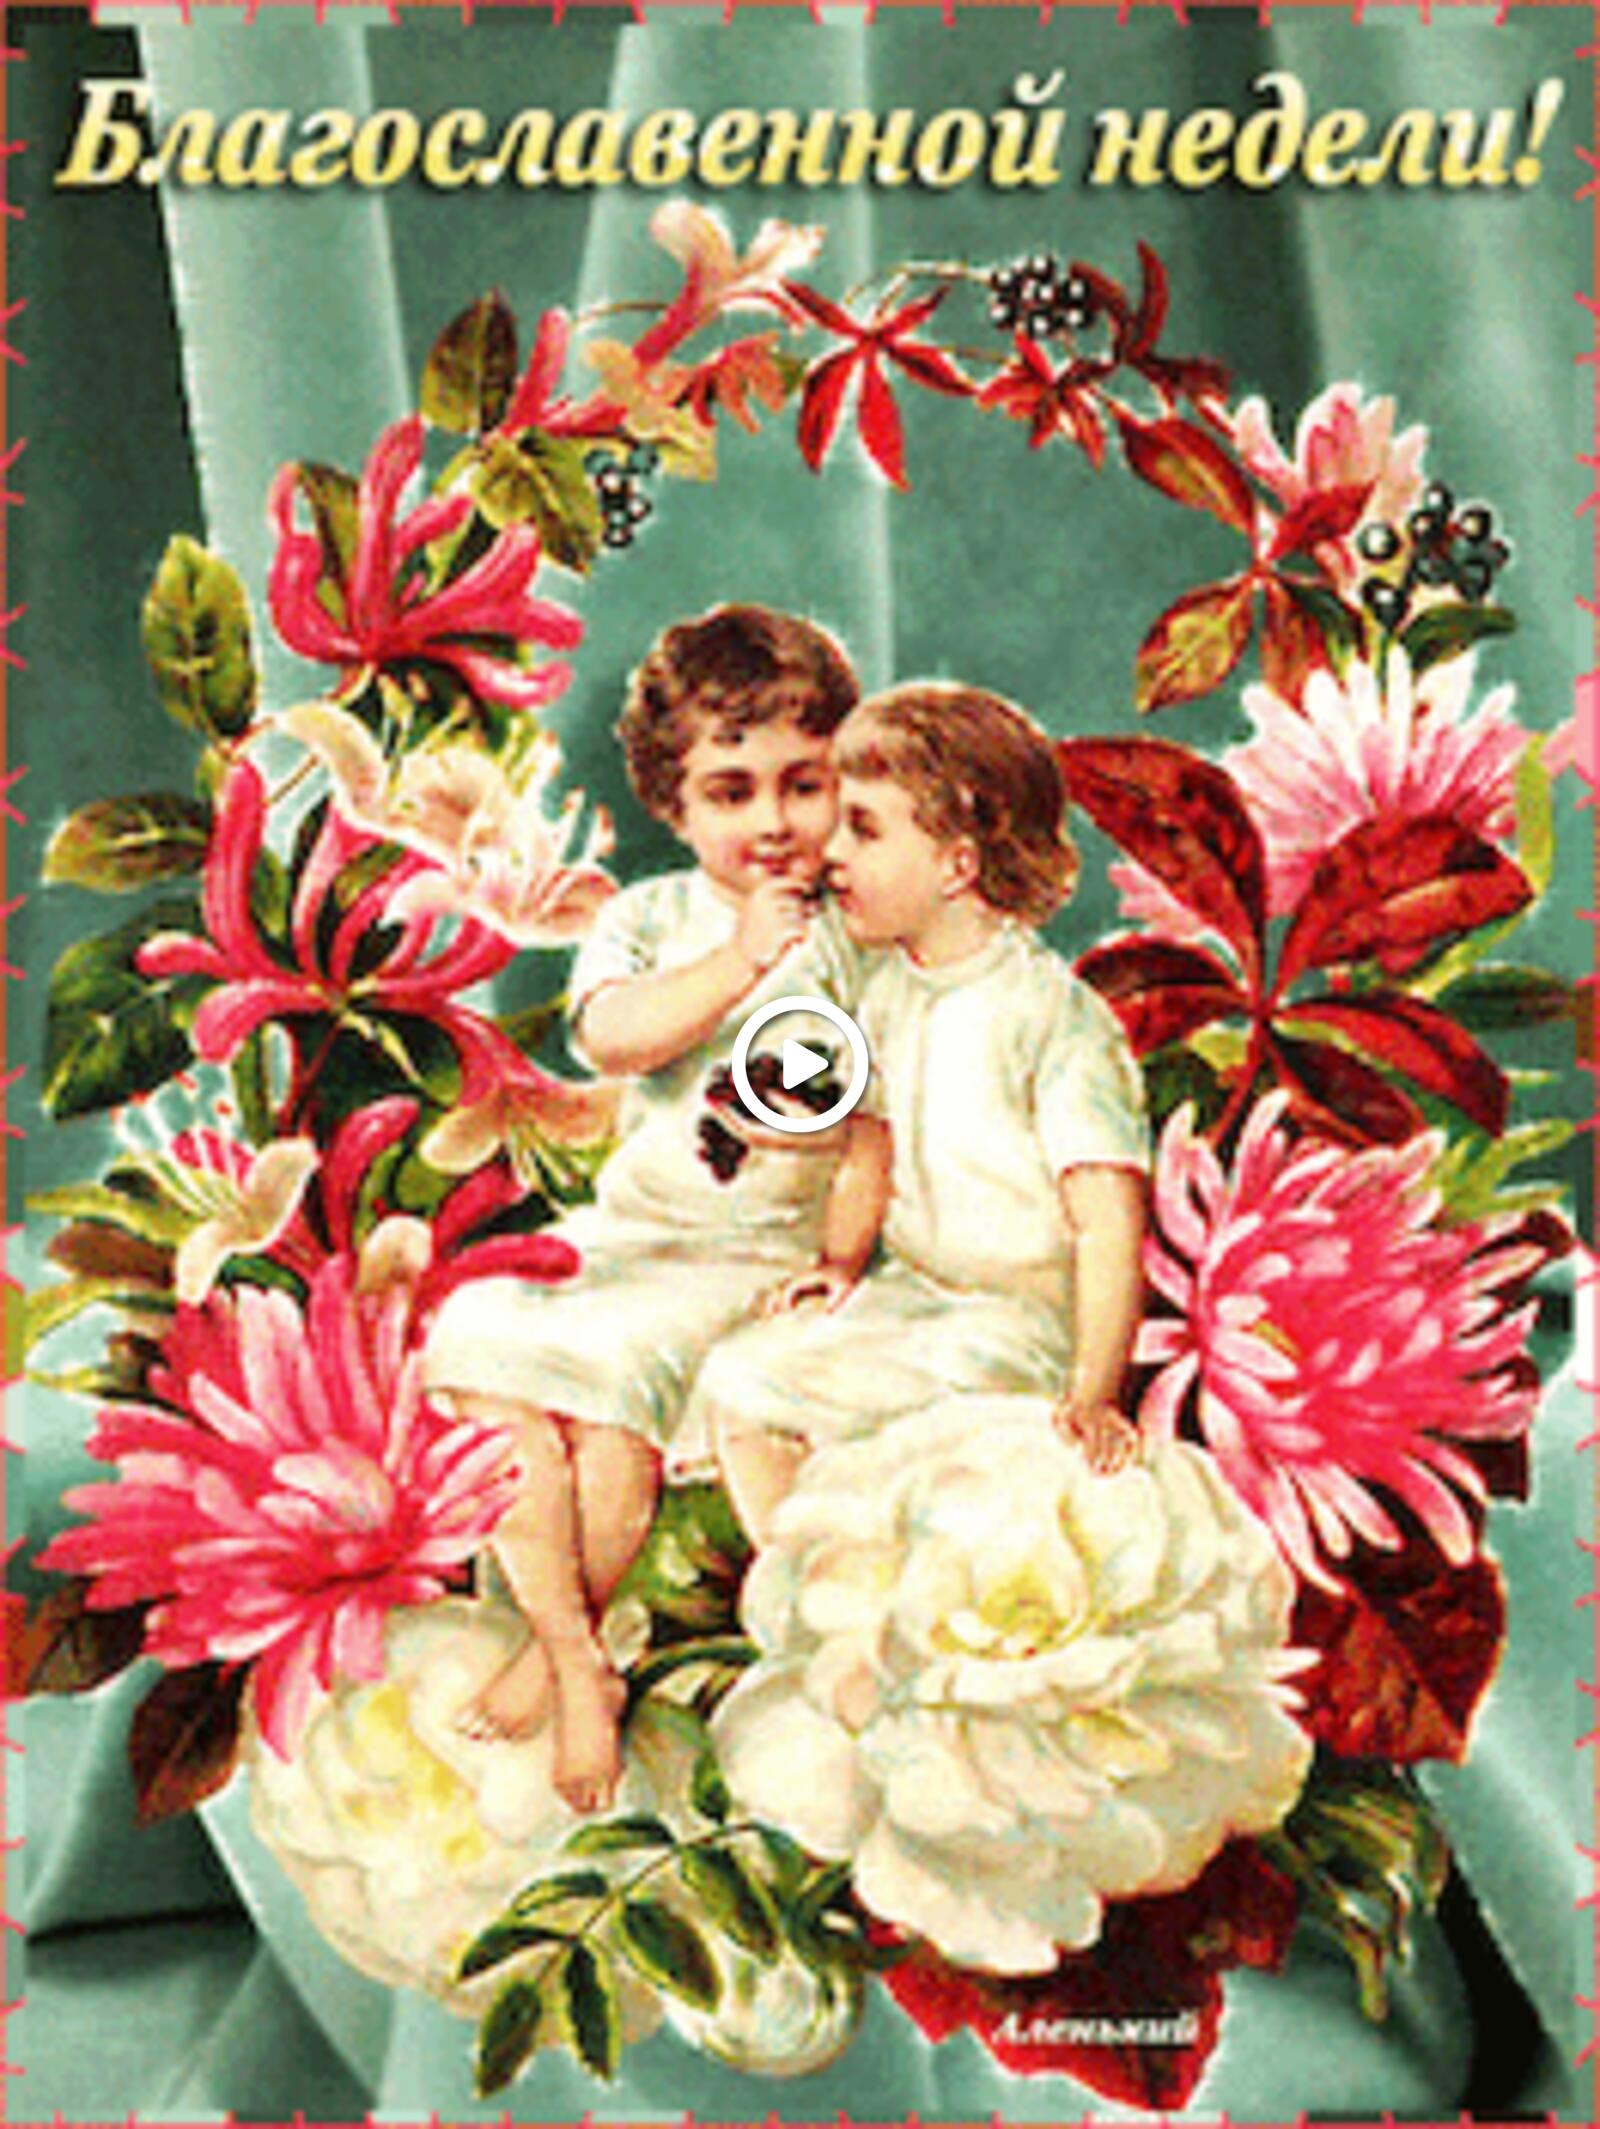 一张以正统的早安祝福 鲜花 儿童为主题的明信片